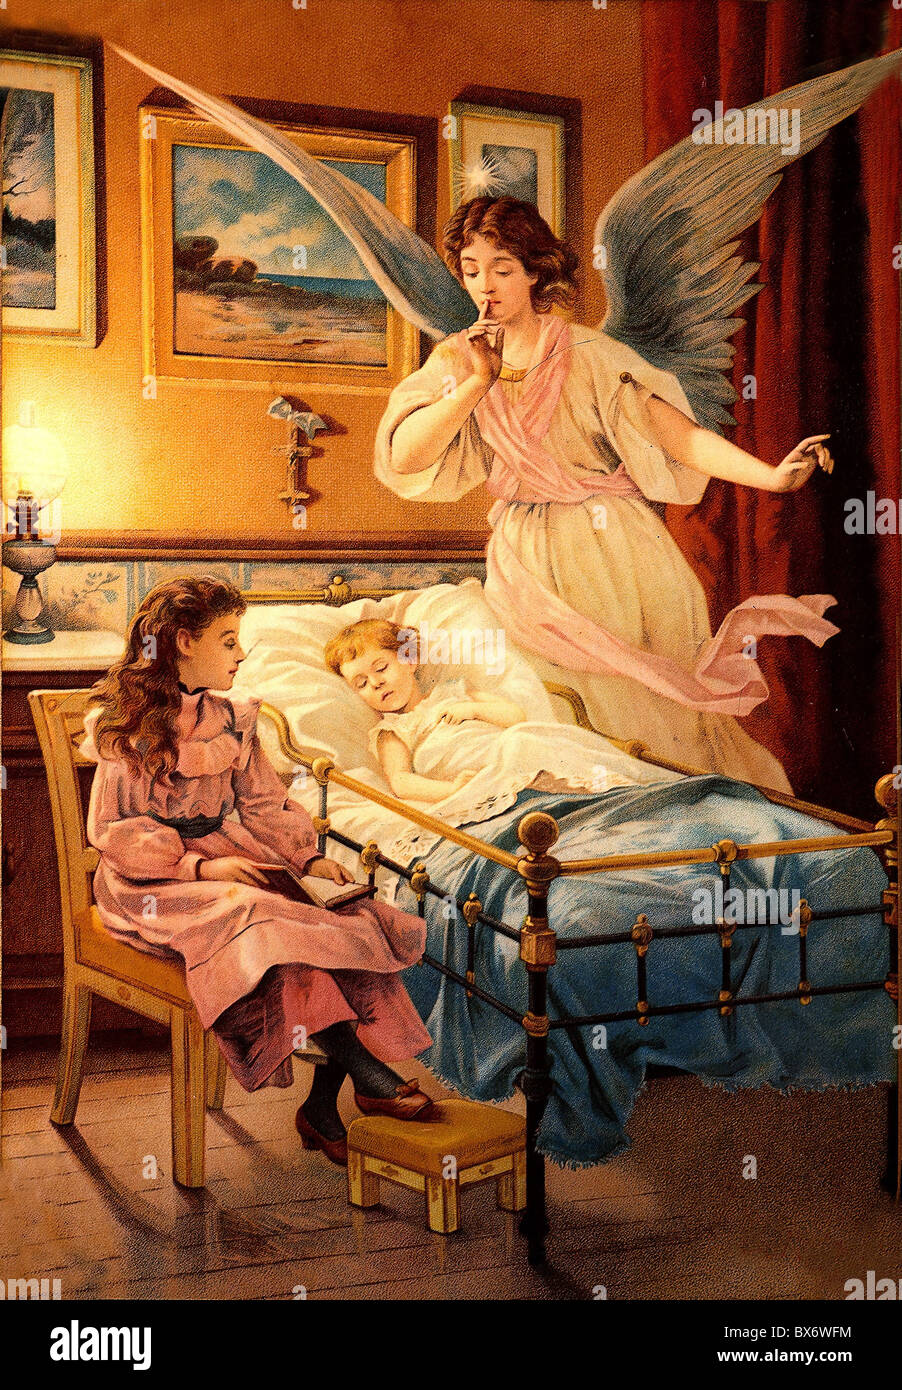 Religion, Christentum, Engel, Schutzengel, der Kinder im Bett bewacht,  Öldruck, um 1900, Zusatzrechte-Clearences-nicht vorhanden Stockfotografie -  Alamy